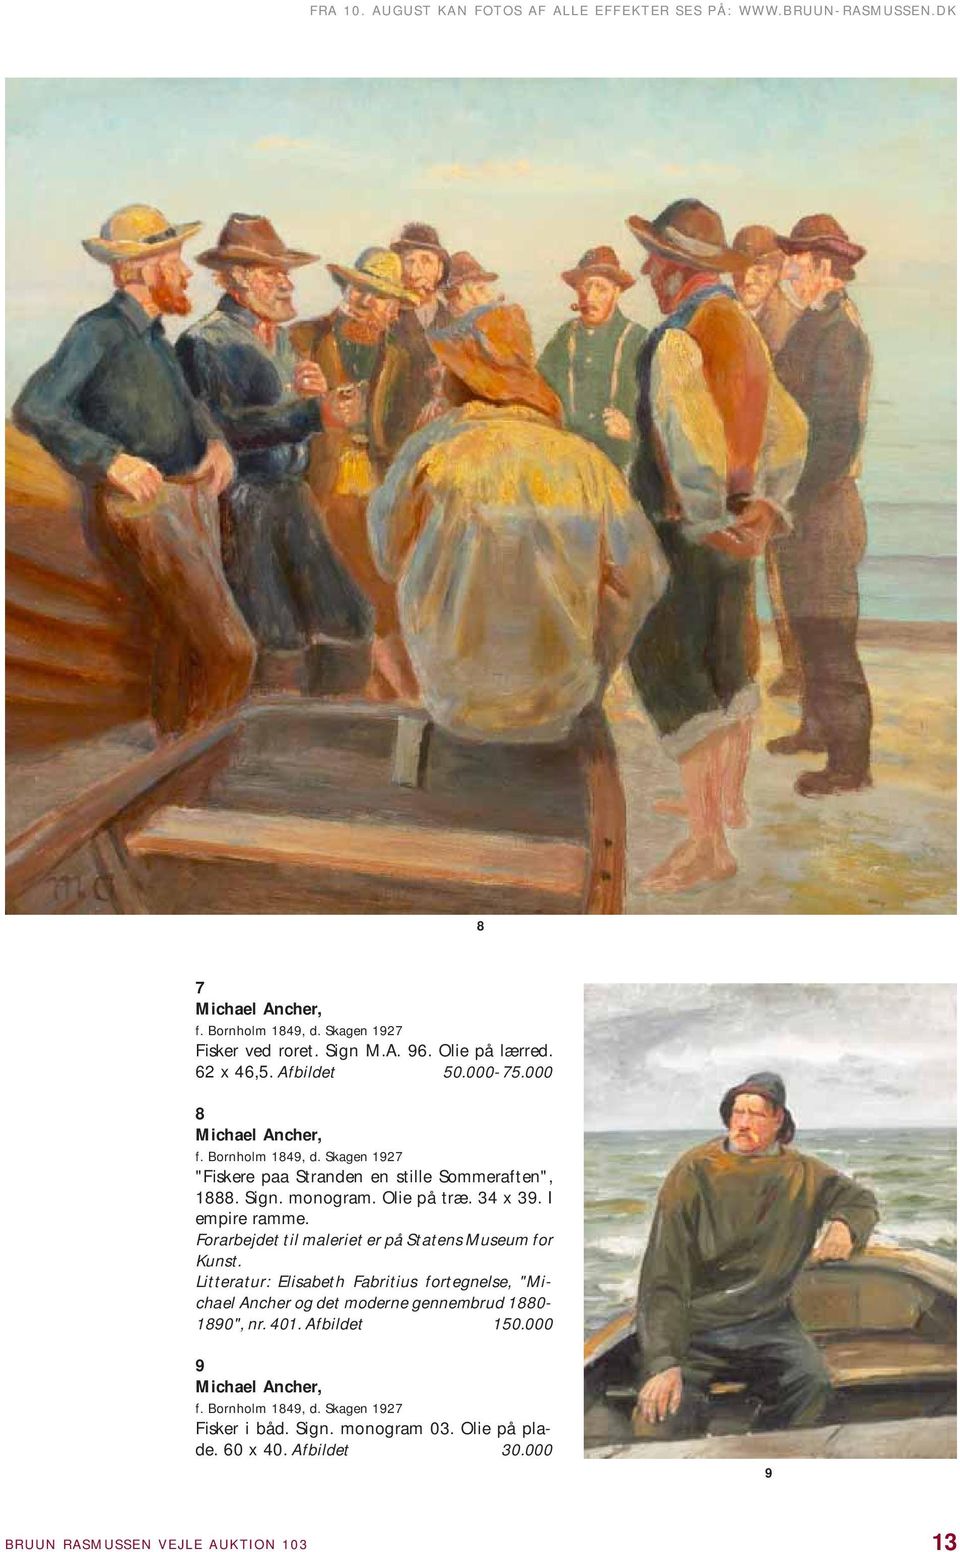 I empire ramme. Forarbejdet til maleriet er på Statens Museum for Kunst. Litteratur: Elisabeth Fabritius fortegnelse, "Michael Ancher og det moderne gennembrud 1880-1890", nr.